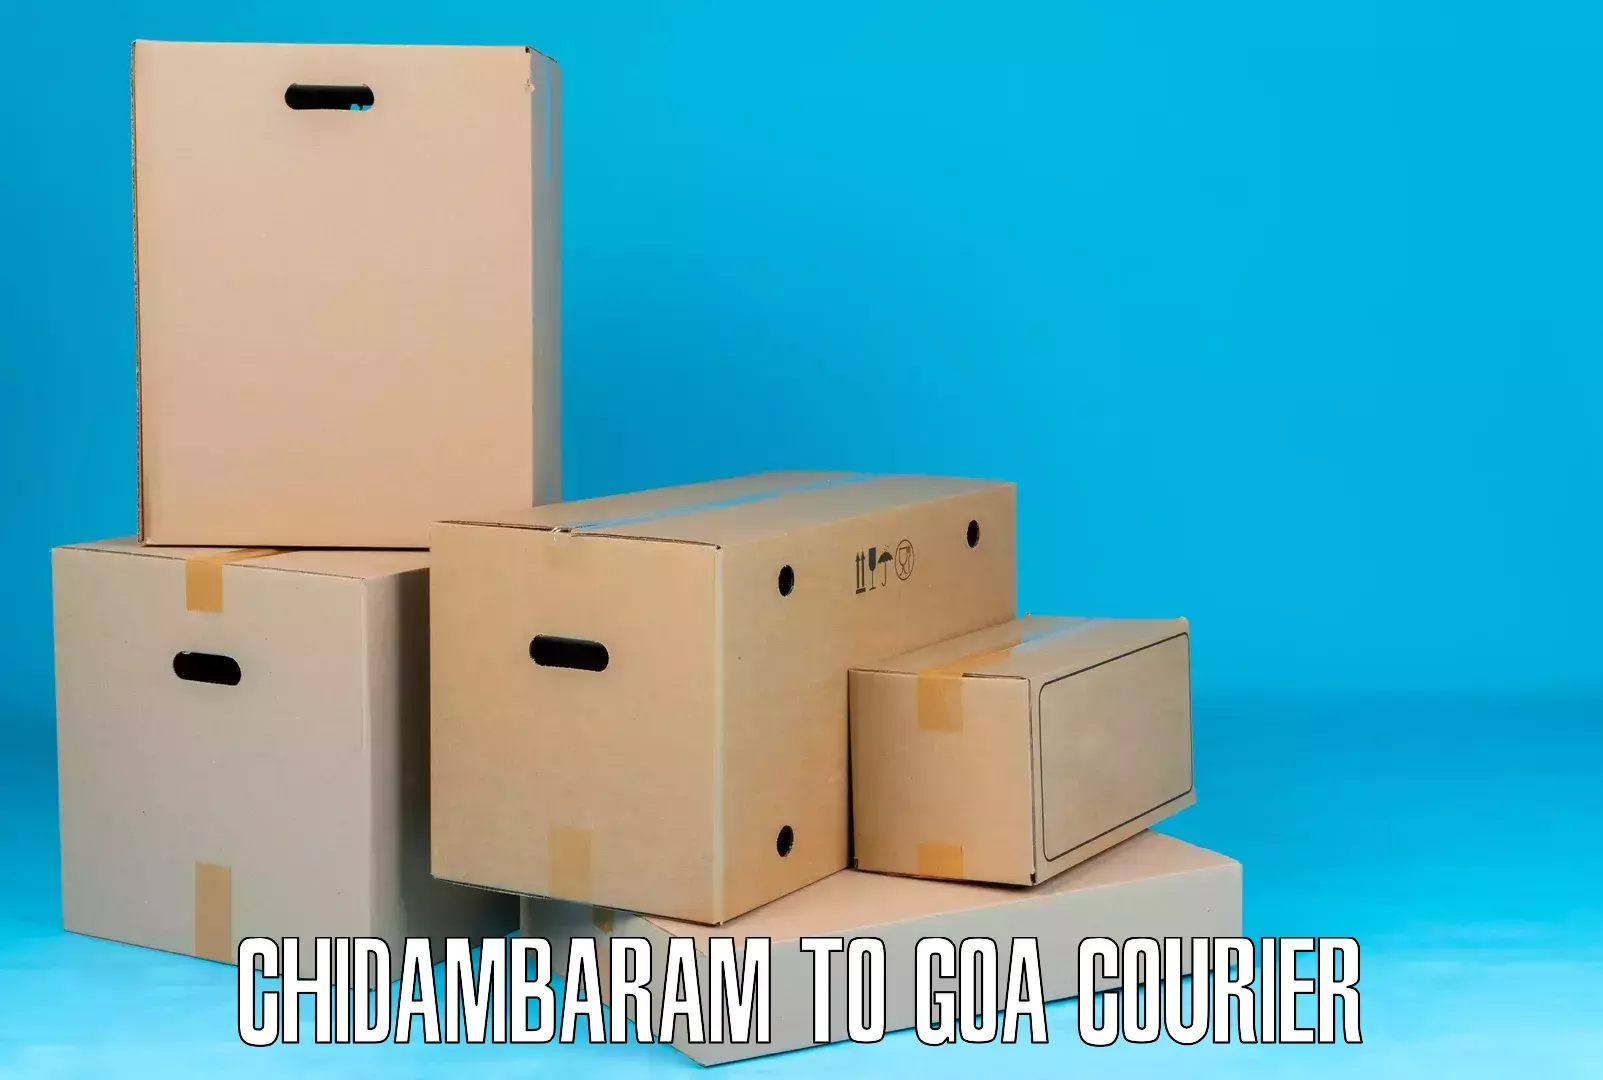 Next-day delivery options Chidambaram to Panaji